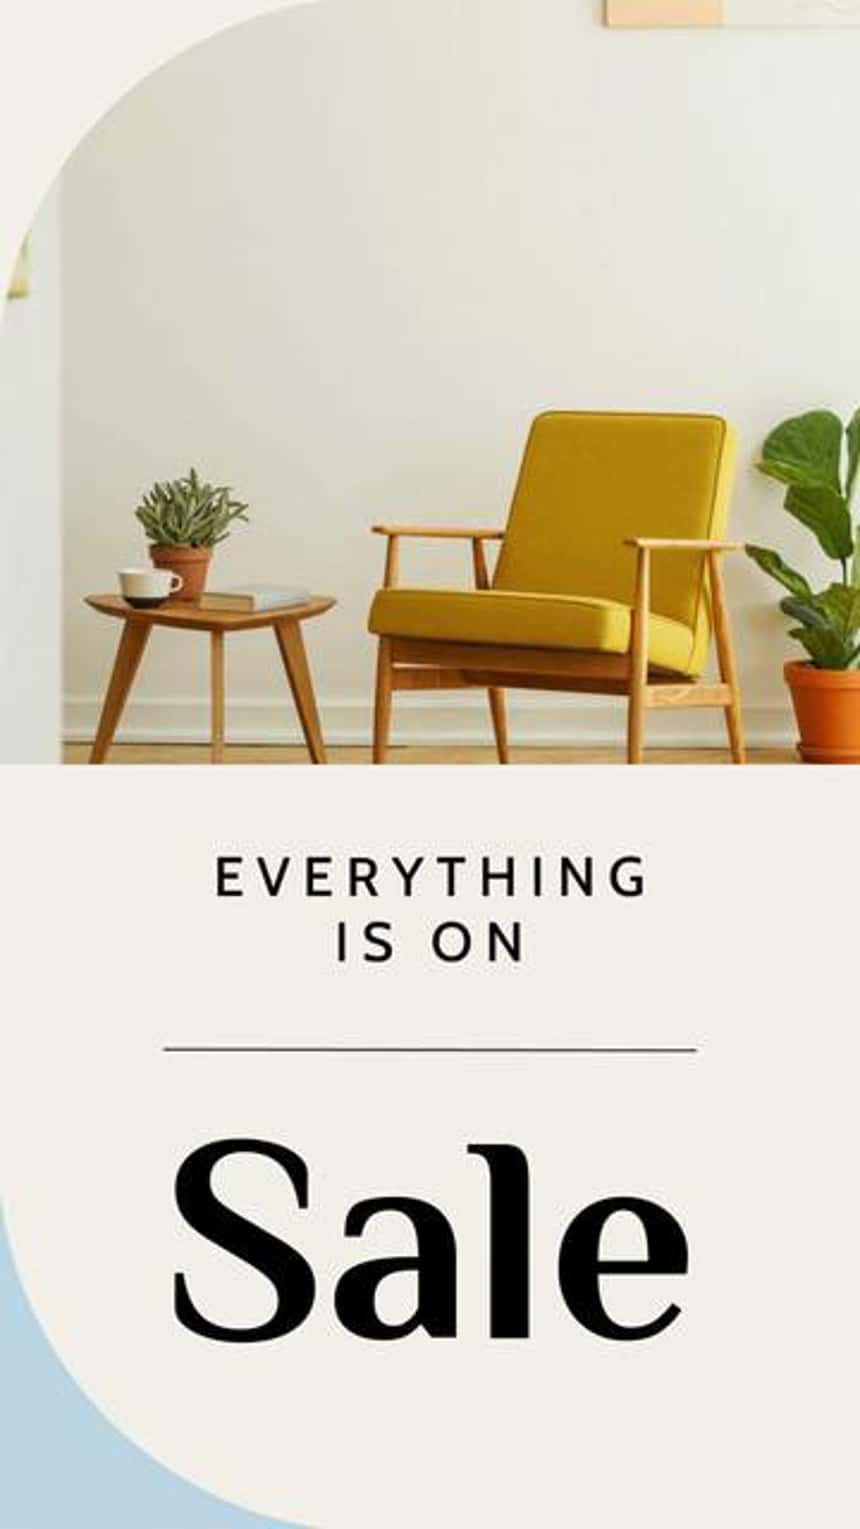 가구 비즈니스를 위한 Instagram 동영상 광고 템플릿에 담긴 노란 의자, 식물, 사이드 테이블 이미지. 이미지에 입력된 \